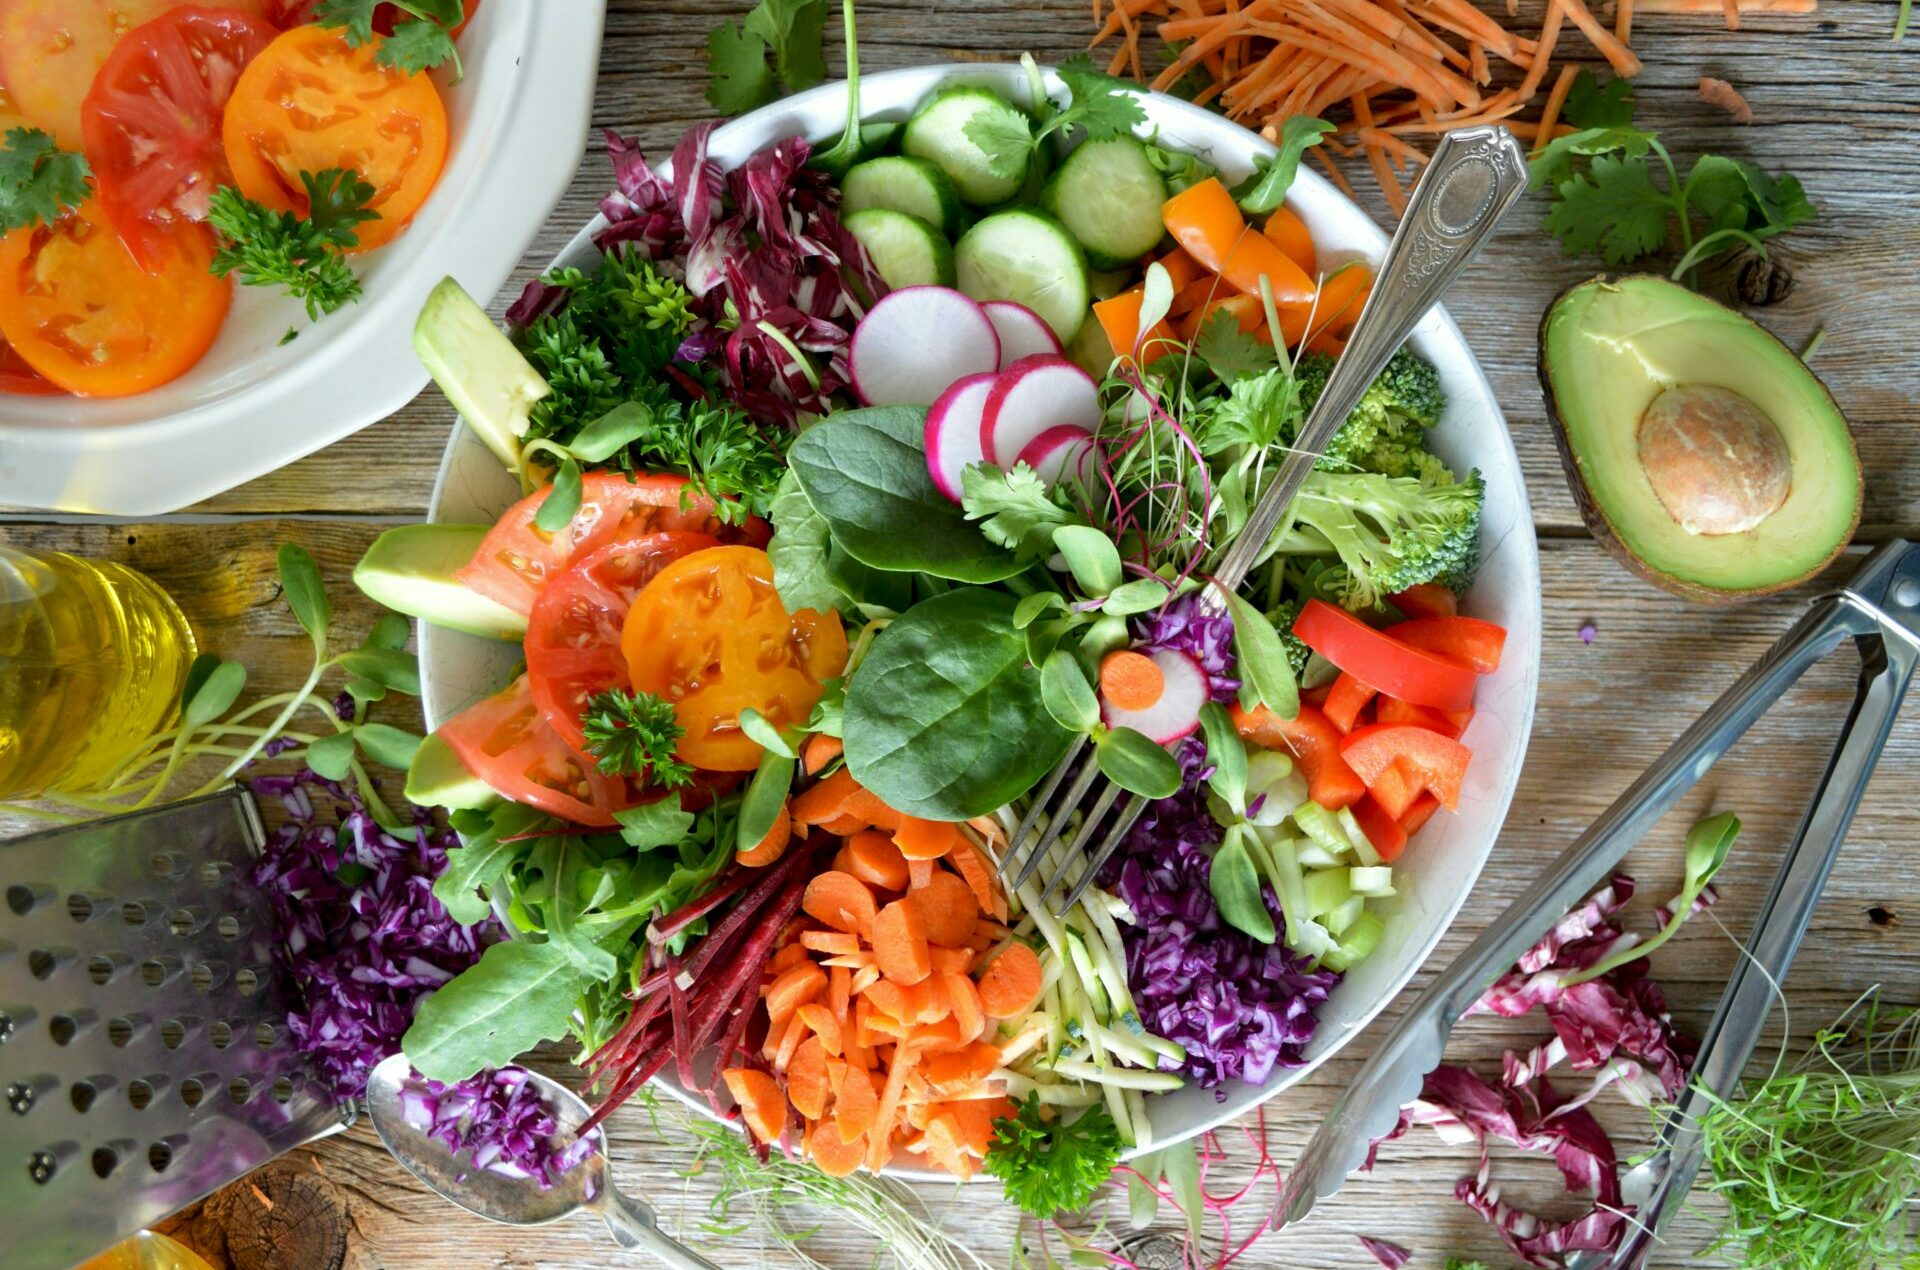 Ontdek de smaken van de lente met onze levendige salades